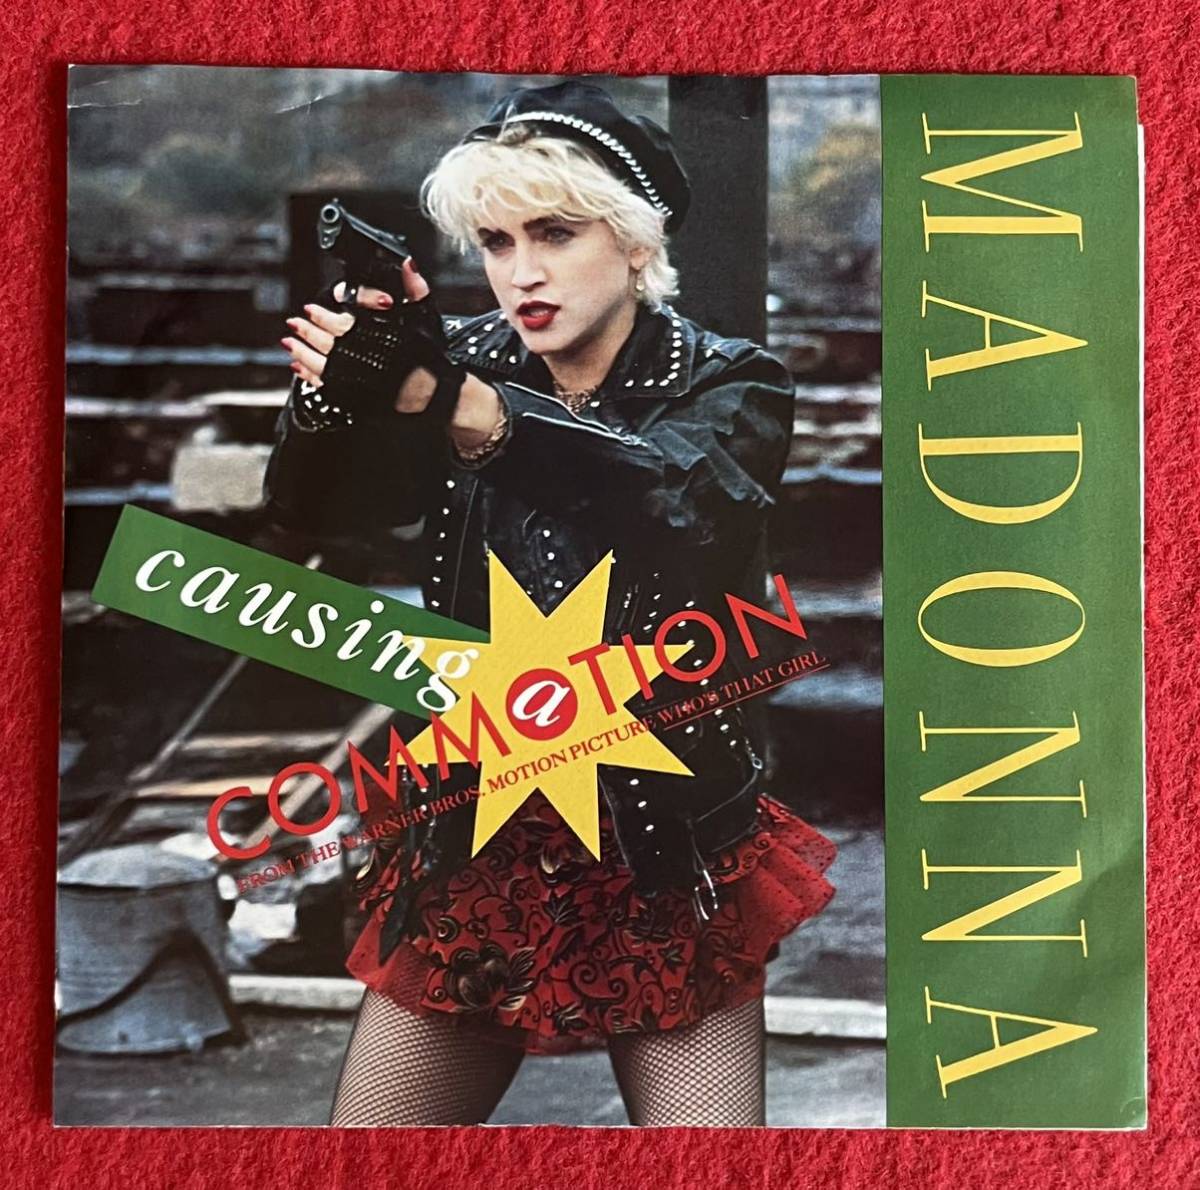 EP盤 Madonna / Causing a Commotion US盤 オリジナル7インチ盤その他プロモーション盤 レア盤 人気レコード 多数出品。_画像1